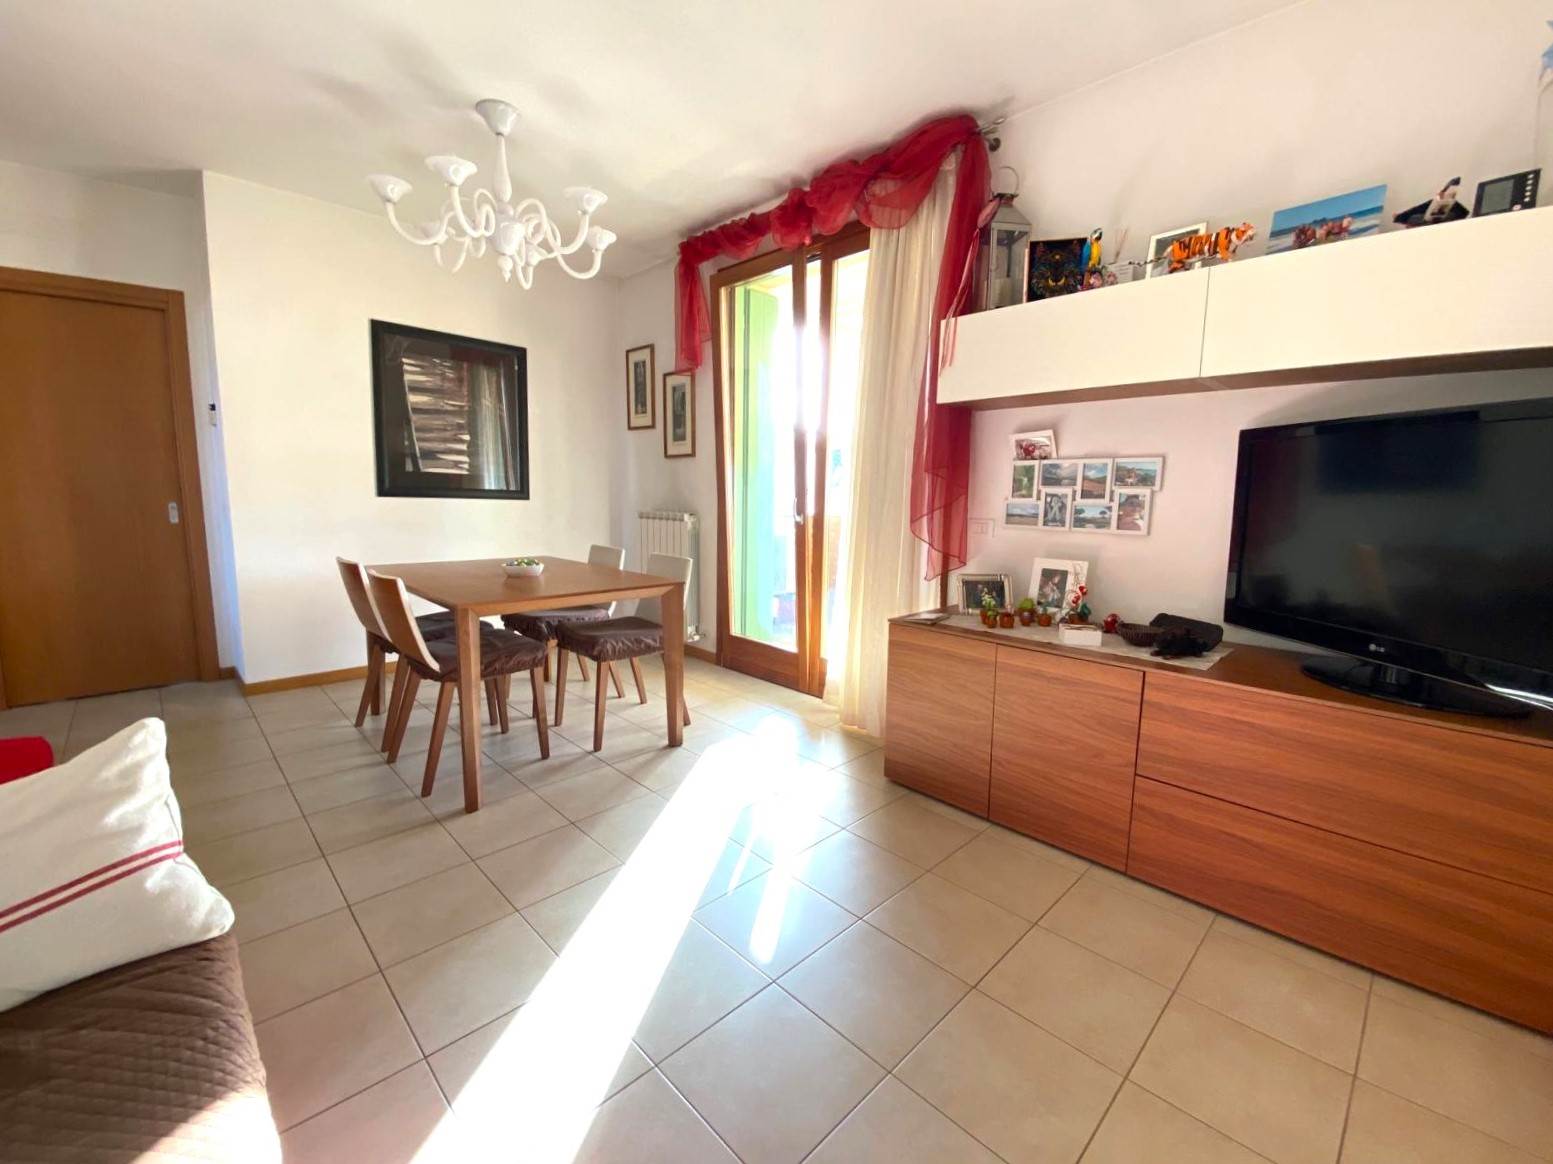 Appartamento in vendita a Spinea, 5 locali, prezzo € 175.000 | PortaleAgenzieImmobiliari.it